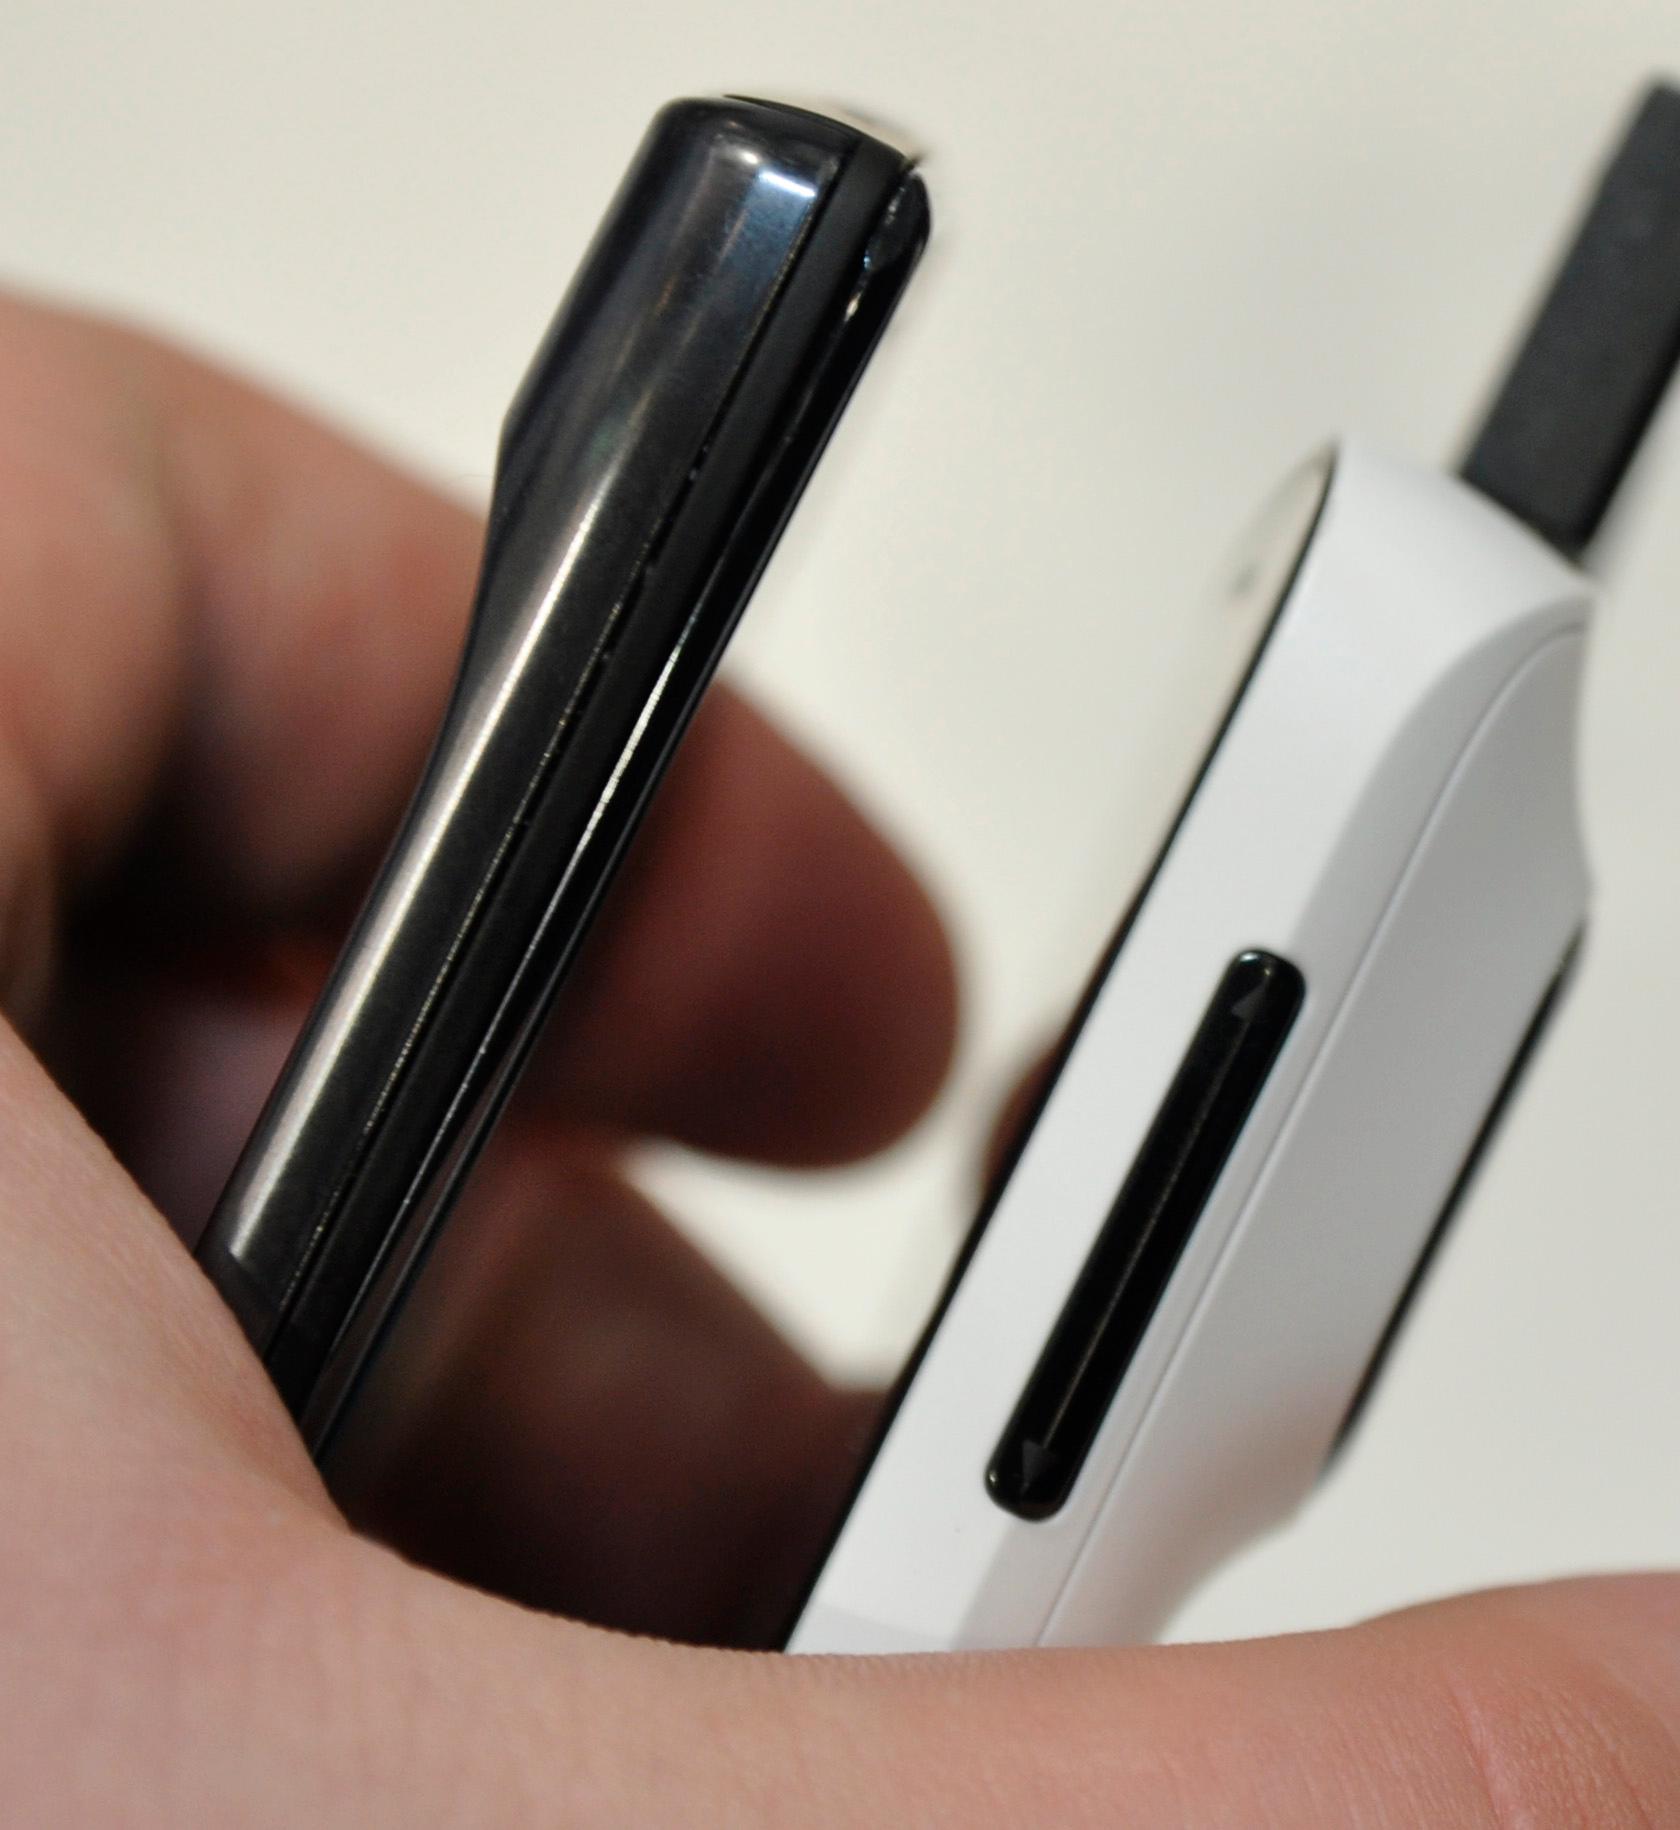 808 Pure View er ikke akkurat verdens tynneste telefon med sine 1,39 cm på strømpelesten. Her ved siden av Motorola Razr.